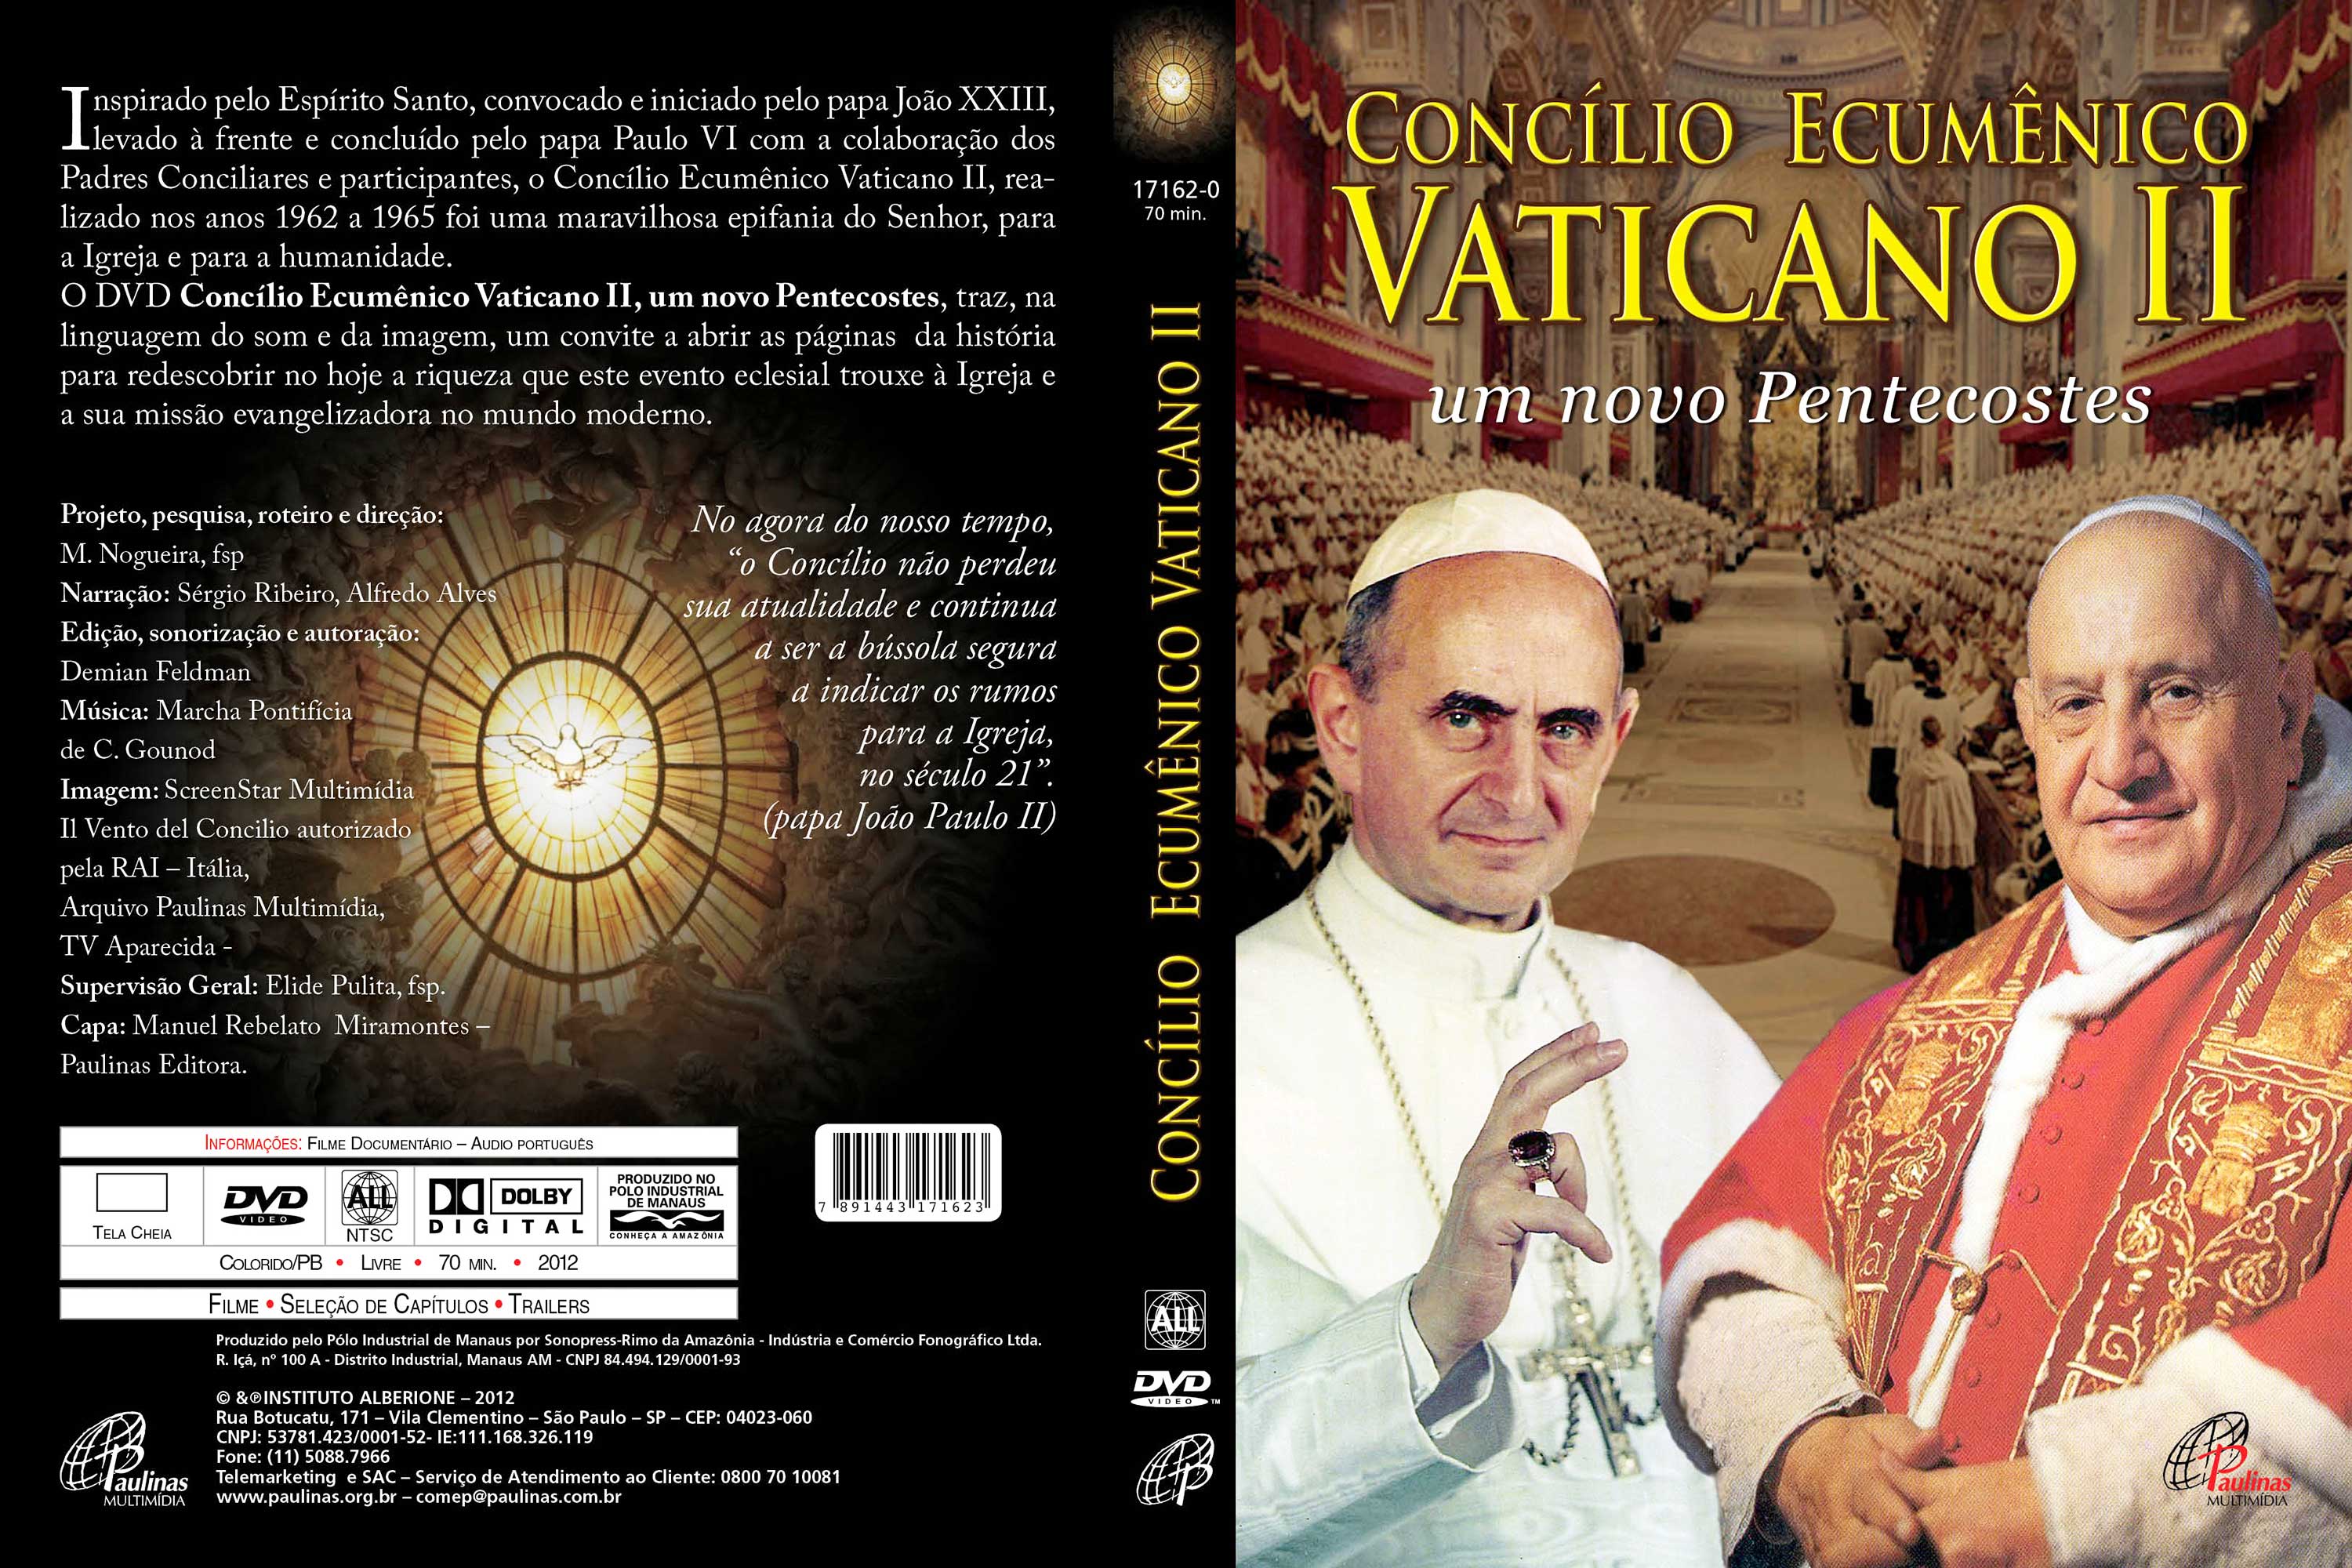 Resultado de imagen para concilio ecumenico vaticano ii